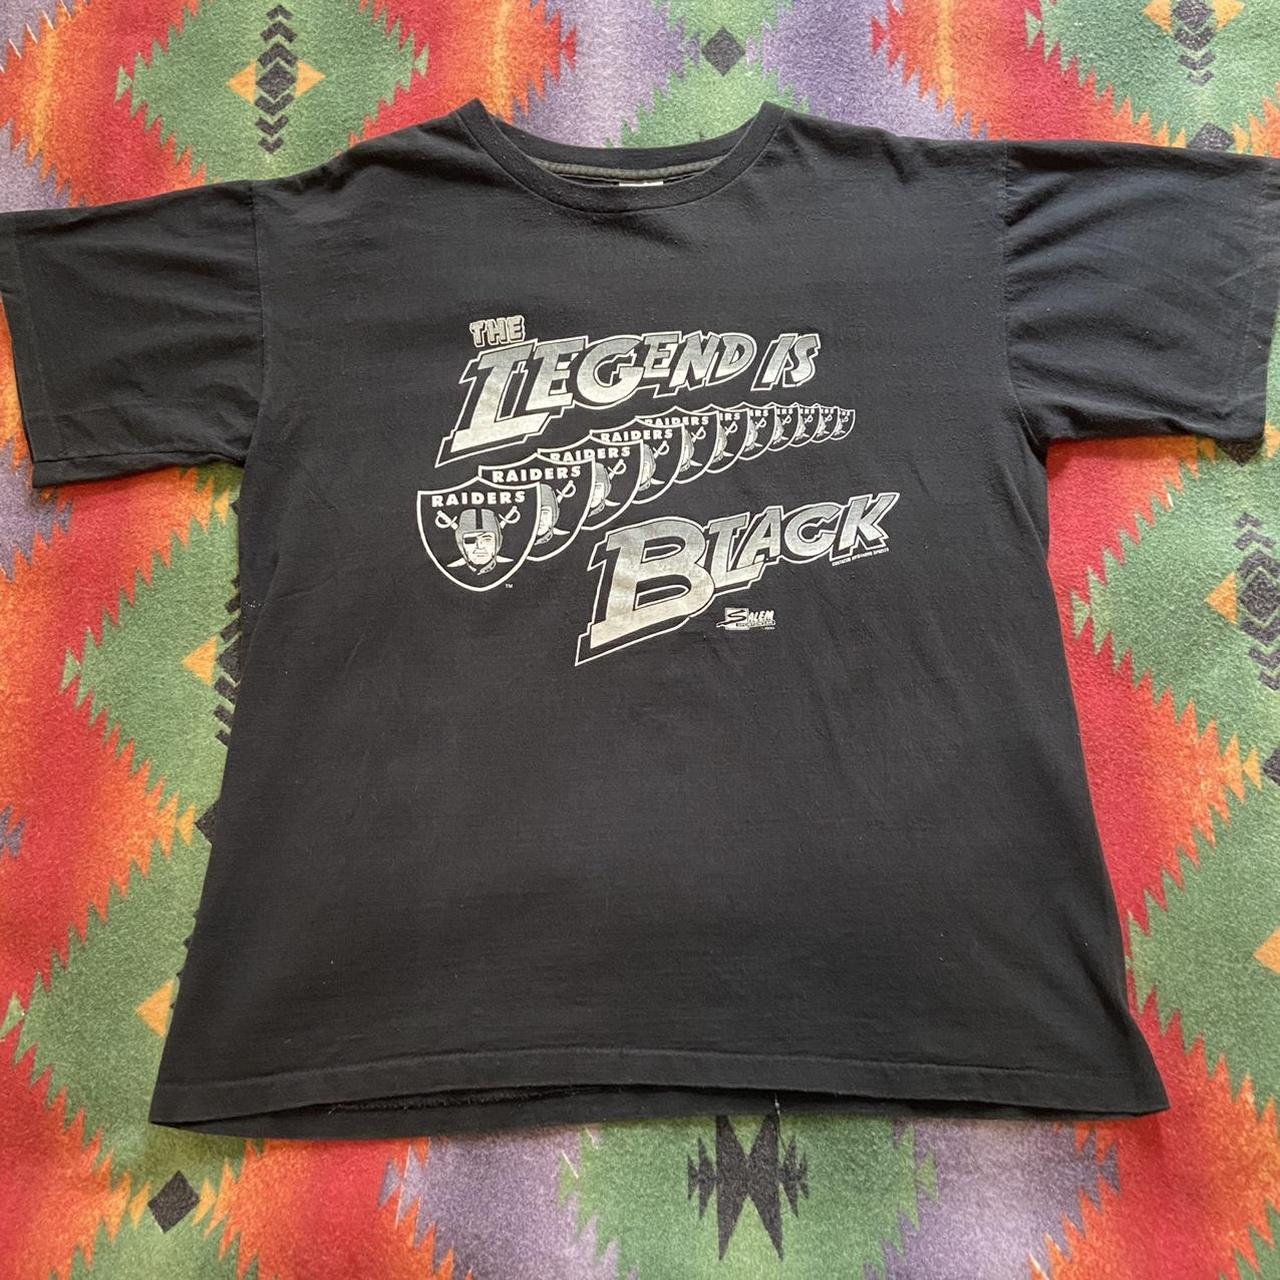 Vintage Oakland Raiders T Shirt Sliver & Black - Depop